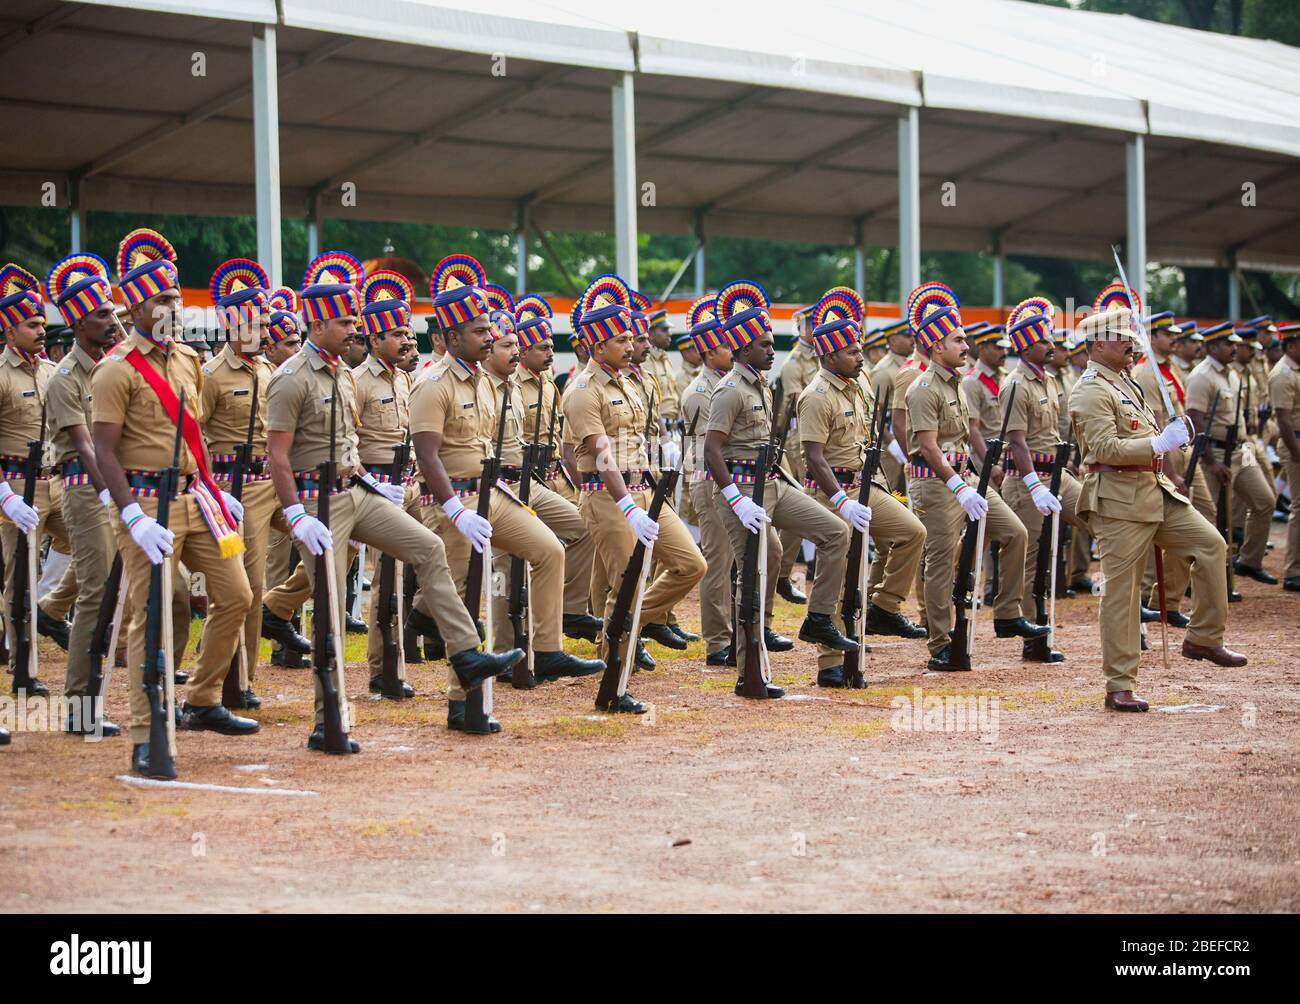 Polizei, ncc-Kadetten, indische Frauen befähigen, College-Kadetten, indische Unabhängigkeit Tag Parade, indische republik Parade, thrissur, kerala, indien, Paradeplatz Stockfoto